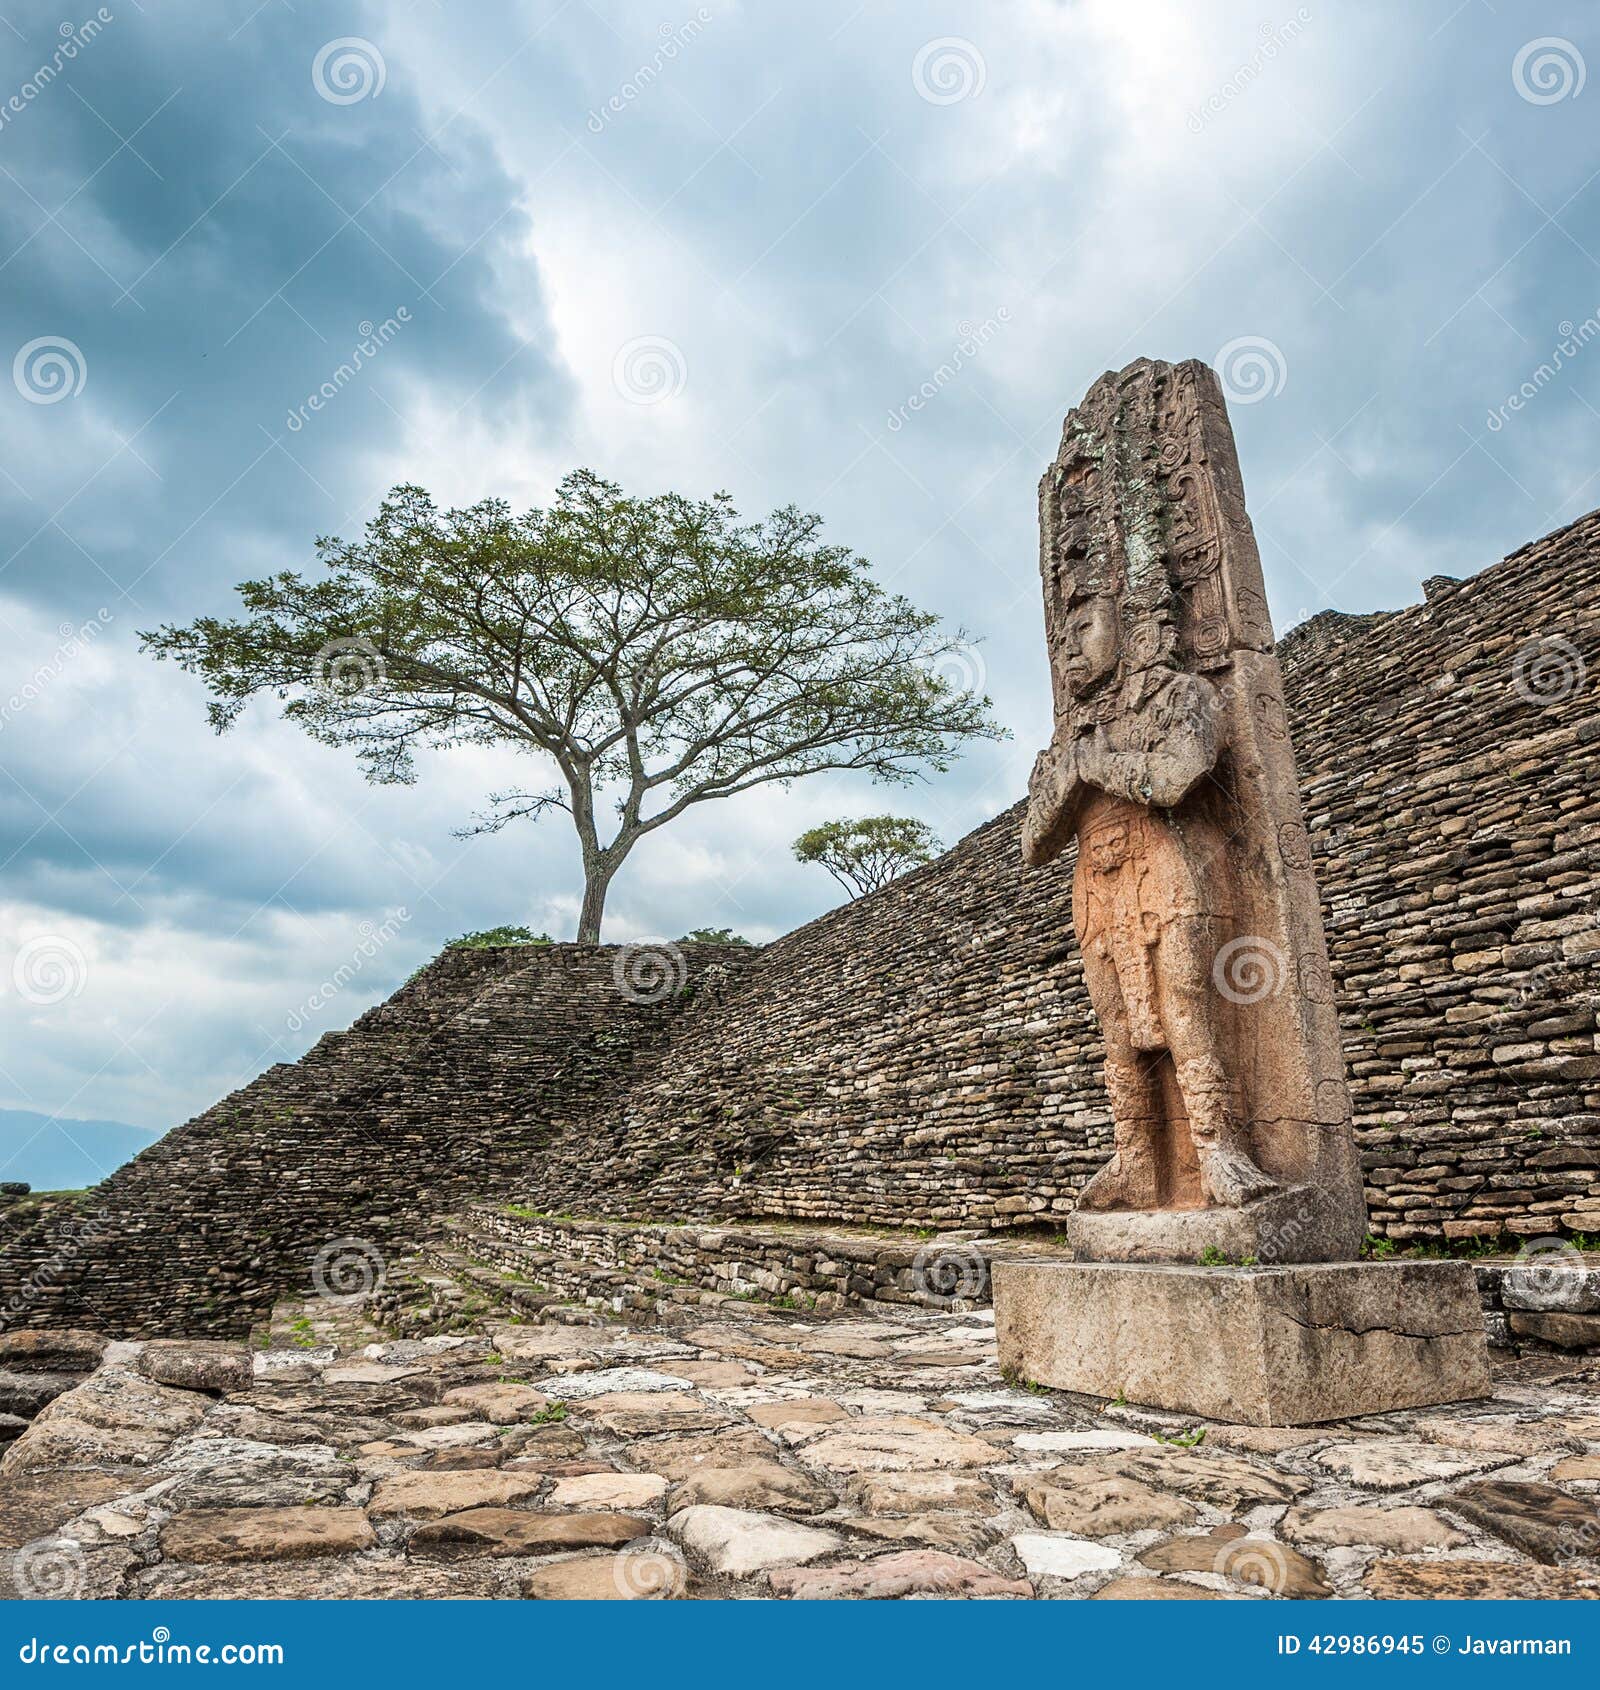 ruined mayan city tonina, chiapas, mexico